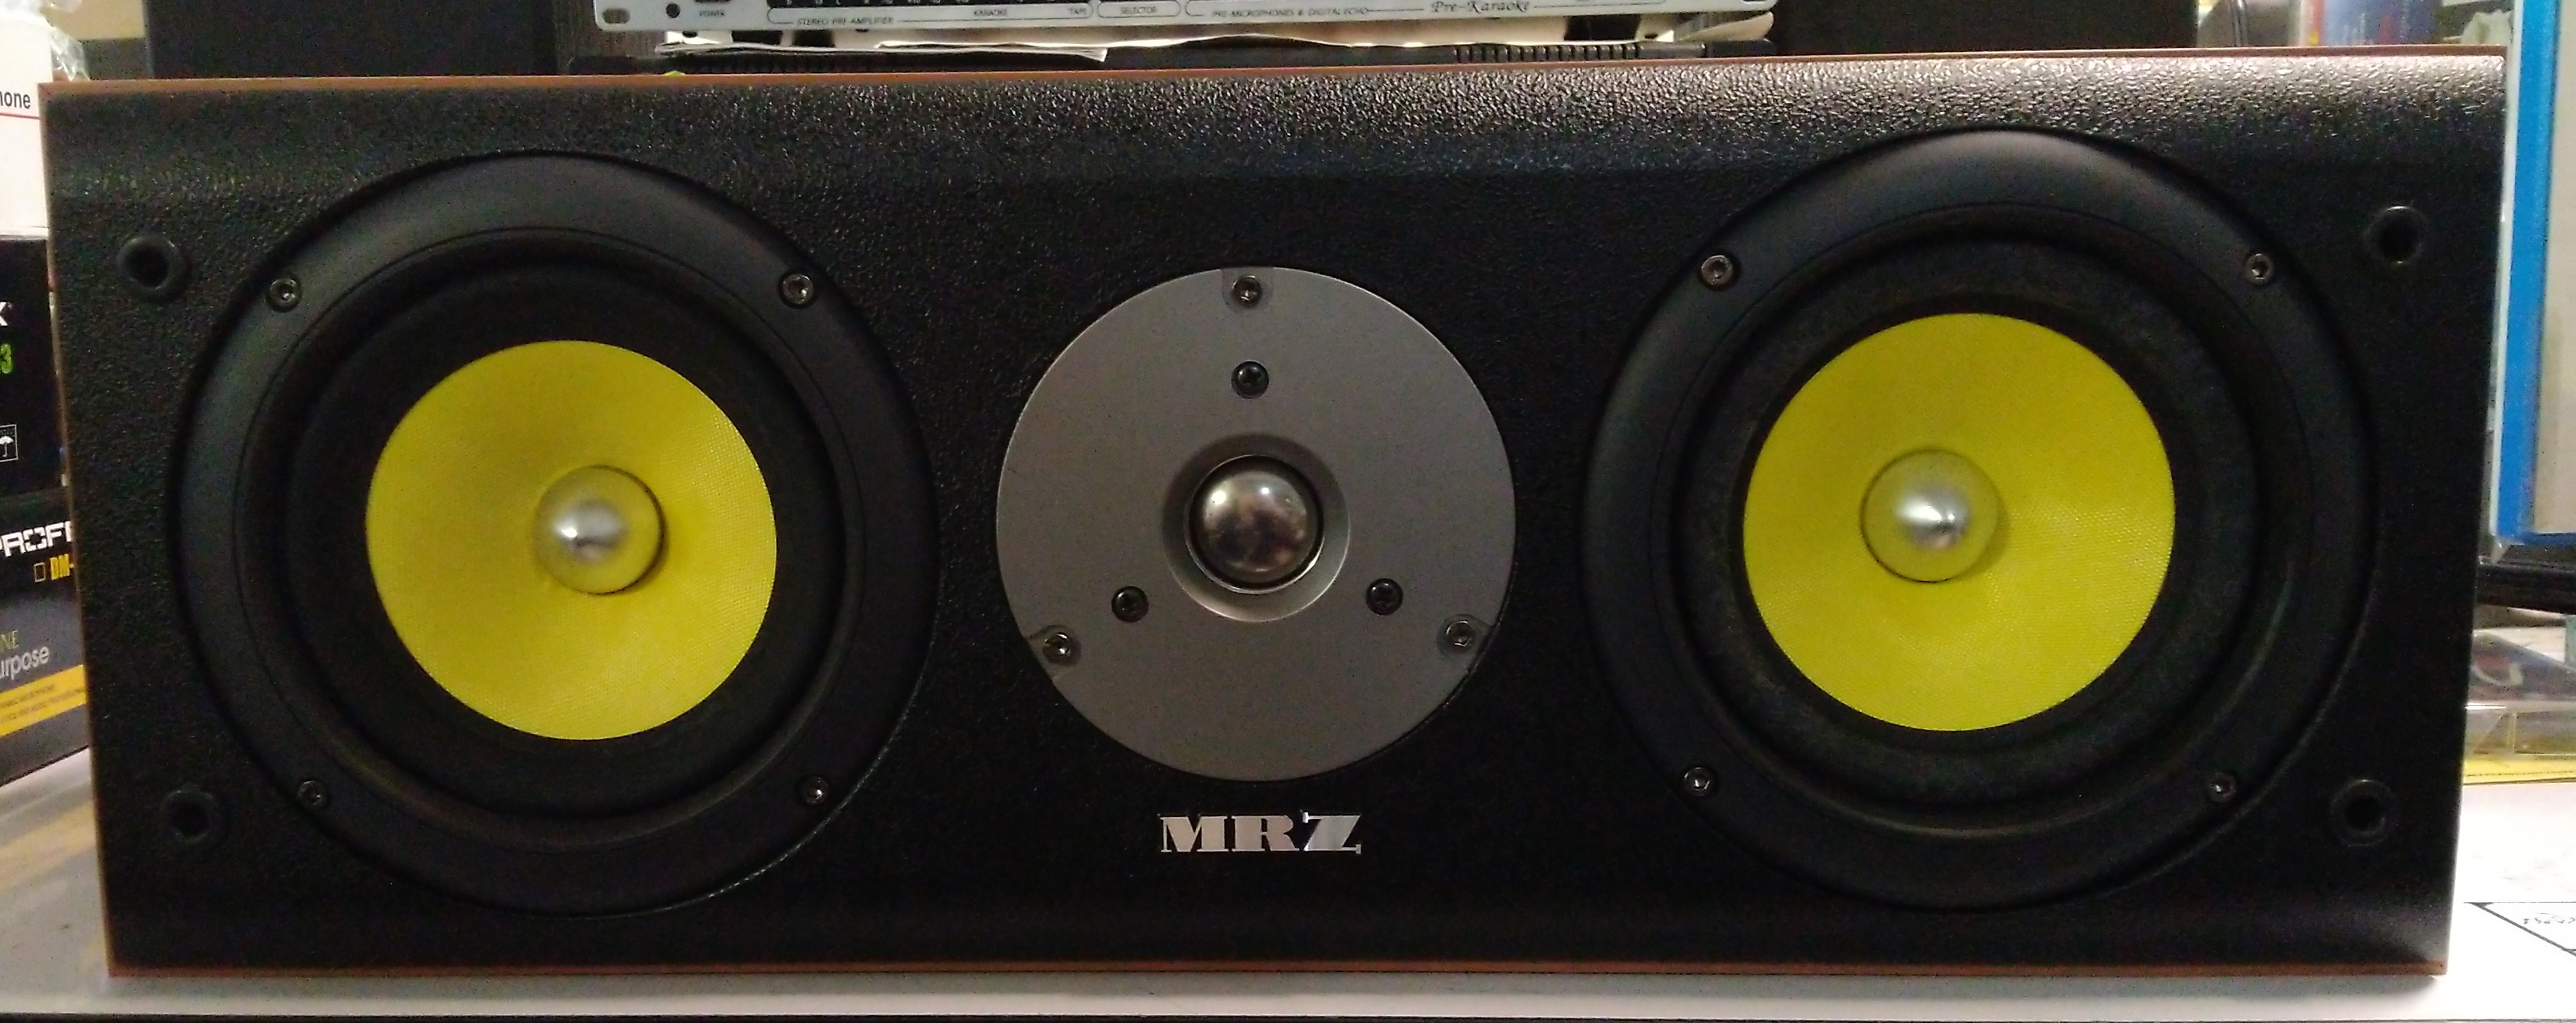 MRZ MRZ-390 C (ส่งฟรี ยกเว้นเขตพิเศษ)